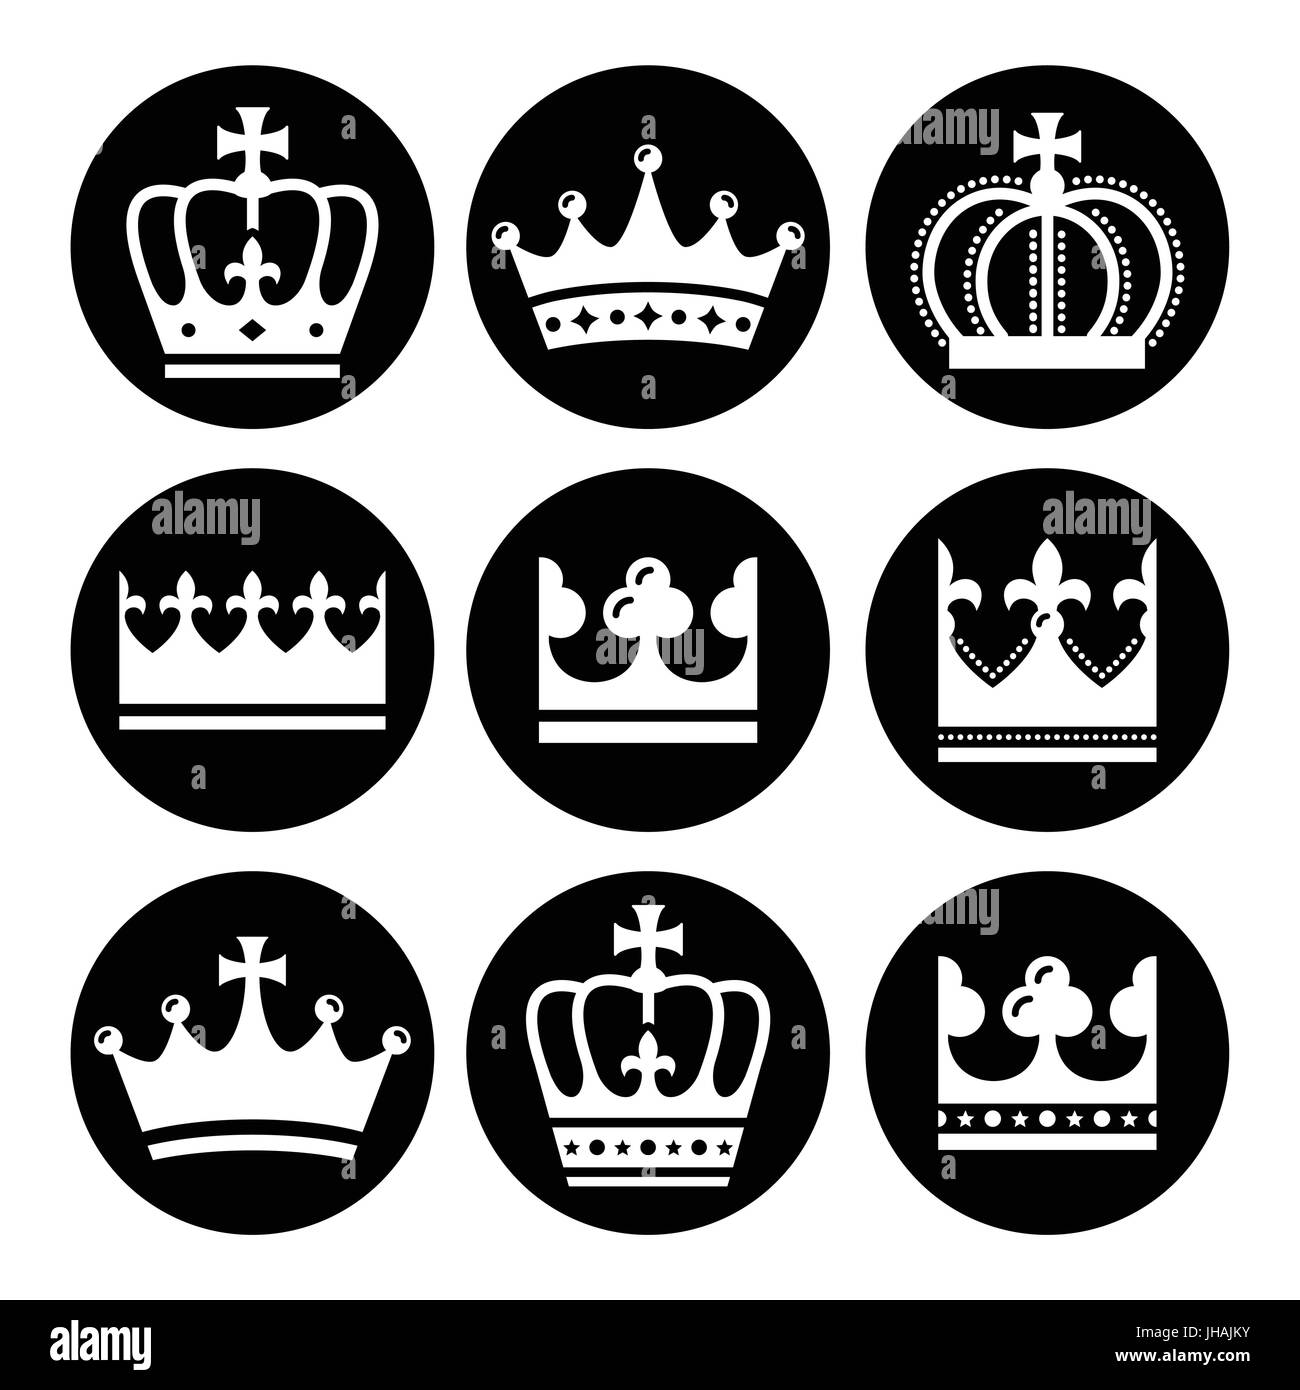 La famille royale, la Couronne - round icons set Illustration de Vecteur